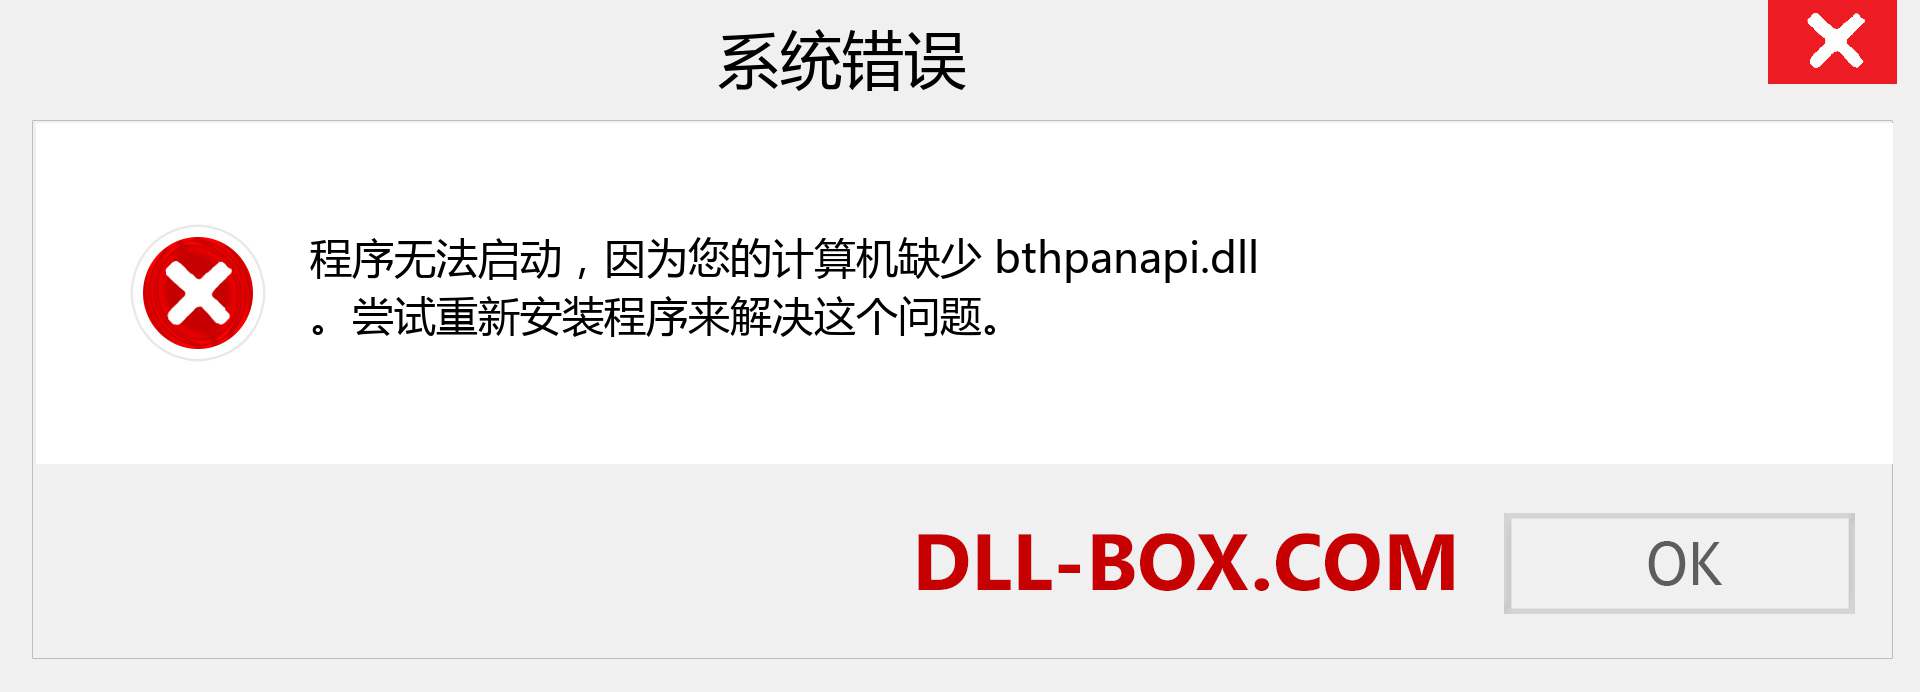 bthpanapi.dll 文件丢失？。 适用于 Windows 7、8、10 的下载 - 修复 Windows、照片、图像上的 bthpanapi dll 丢失错误